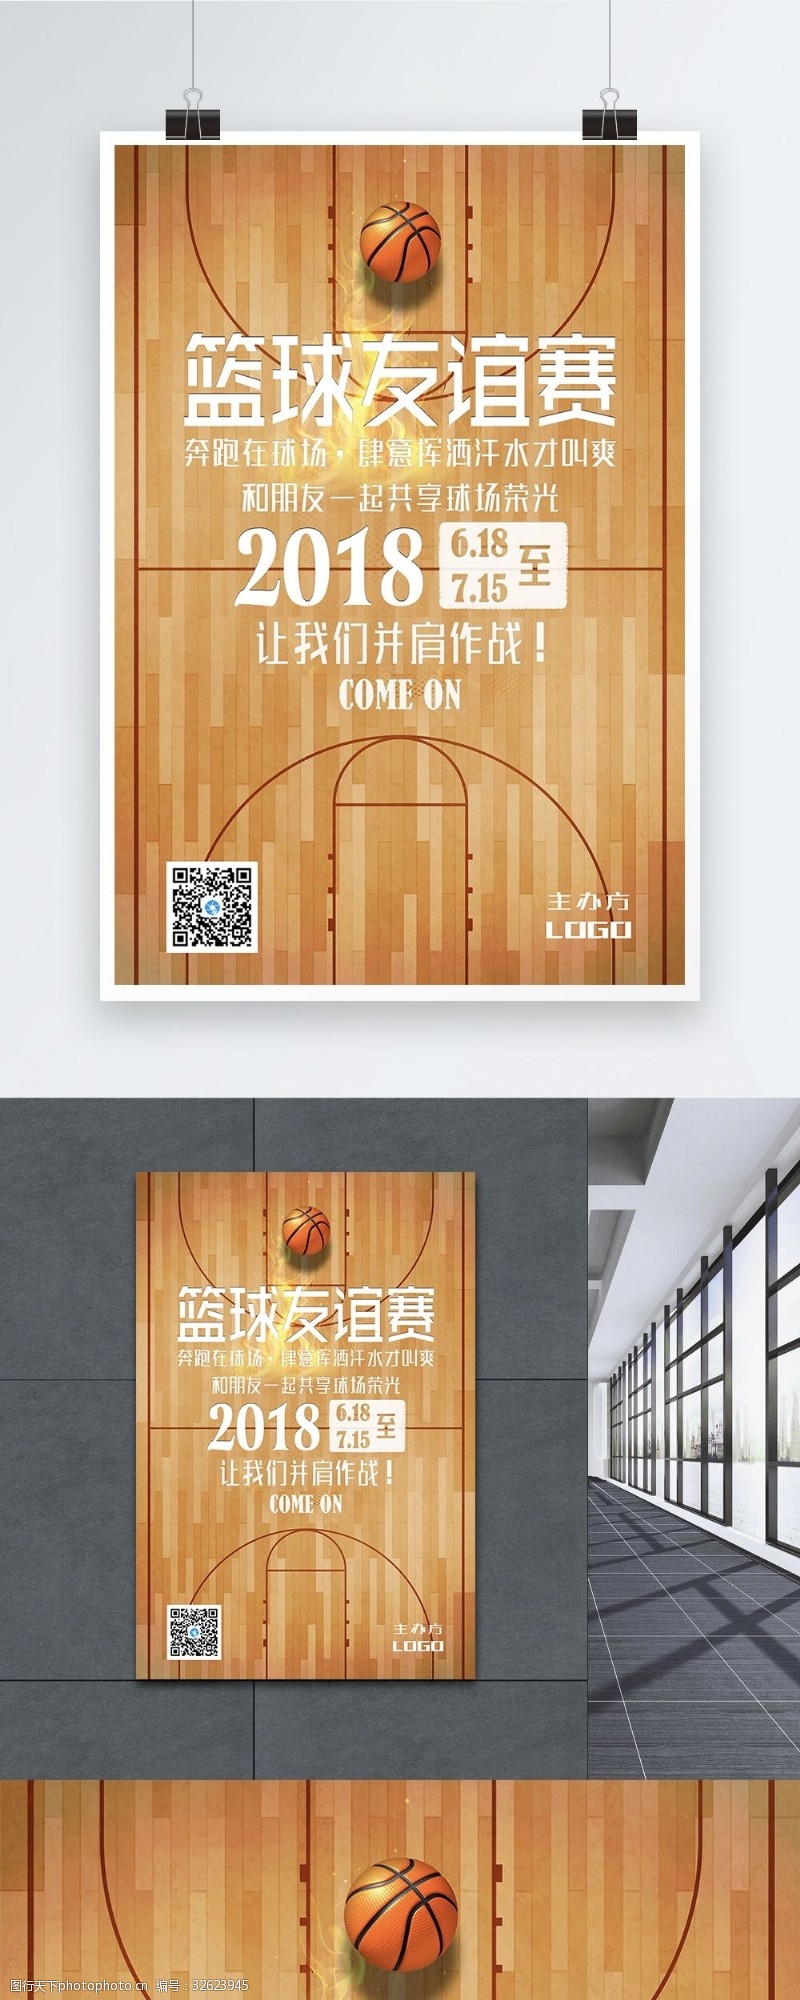 友谊赛篮球比赛海报